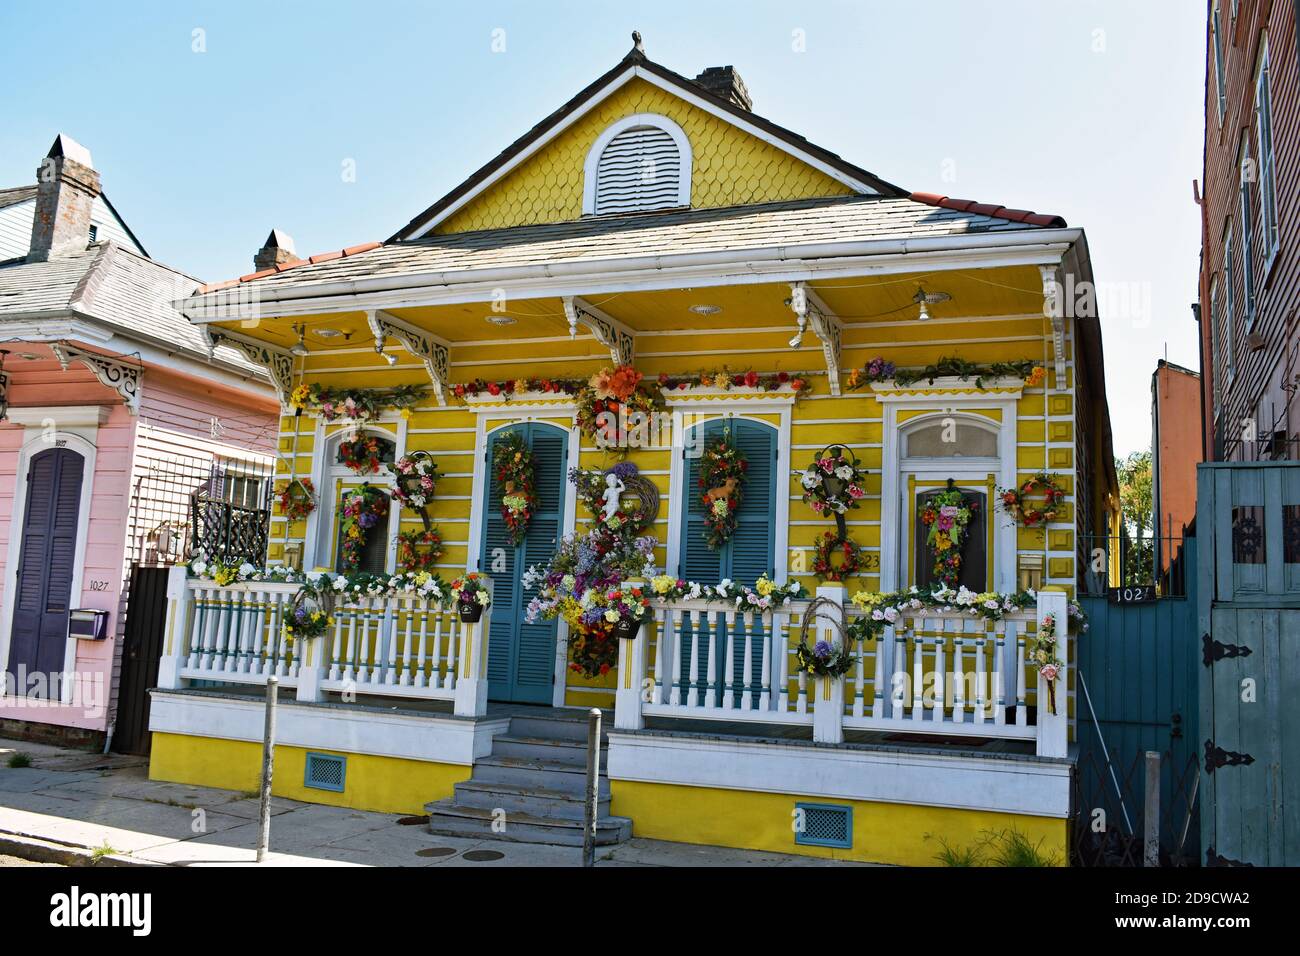 Un cottage creolo tradizionale su St Ann Street nello storico quartiere francese di New Orleans, Louisiana. La casa gialla è decorata con fiori. Foto Stock